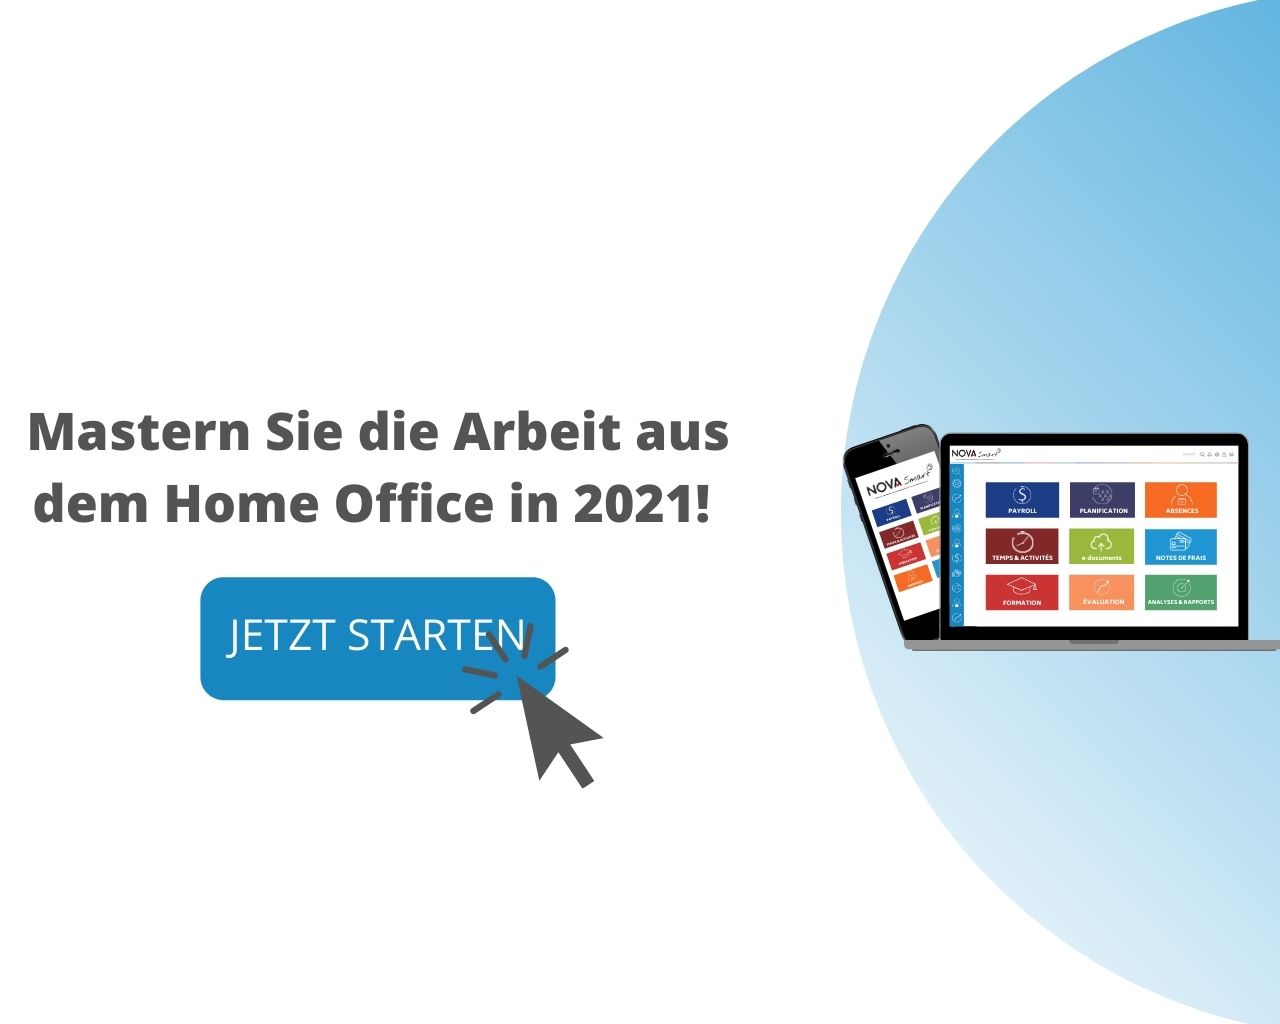 Bild mit Schriftzug: Mastern Sie die Arbeit aus dem Home Office in 2021, jetzt starten. Bild verlinkt mit Landing Page